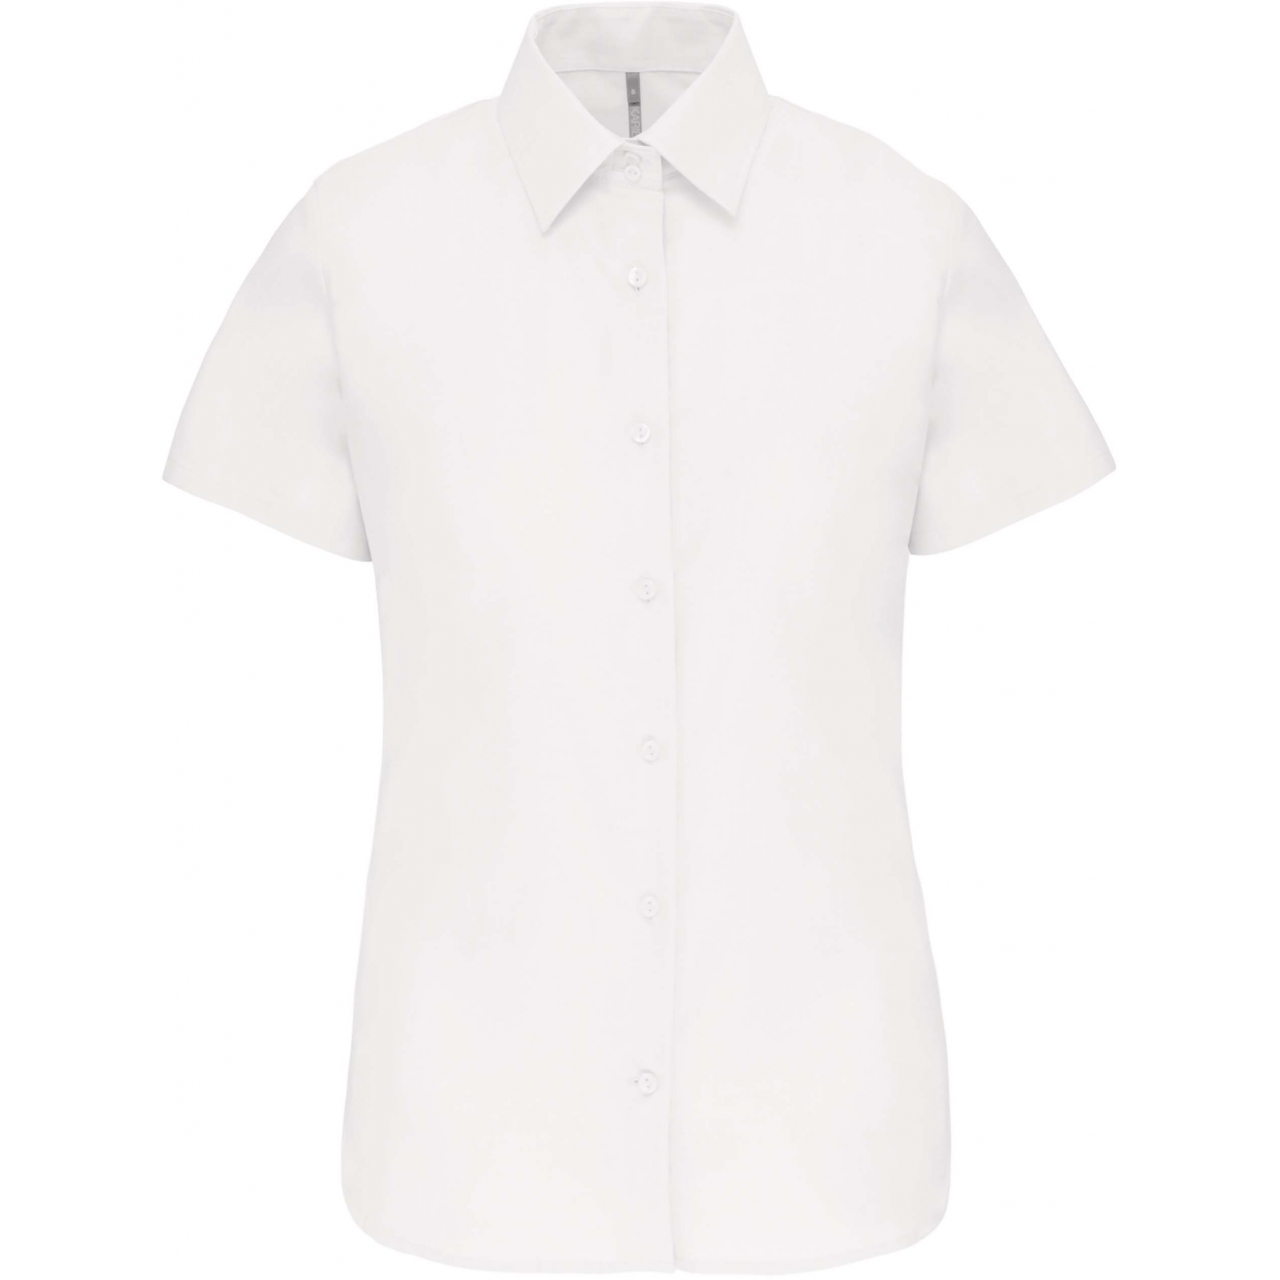 Košile dámská s krátkým rukávem Kariban Oxford - bílá, S